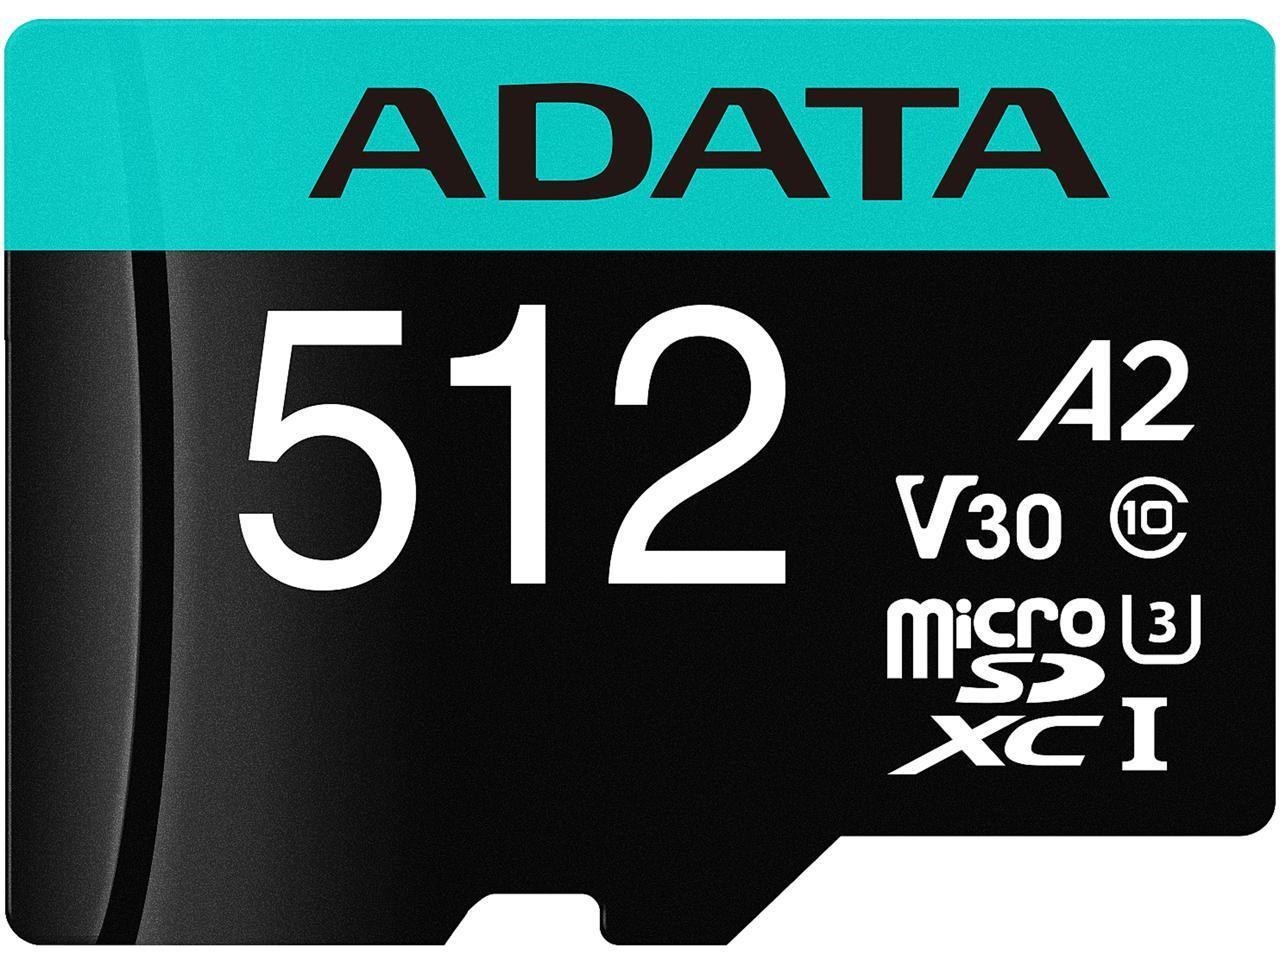 Adata Premier Pro 512 GB Class 10/UHS-I (U3) V30 microSDXC